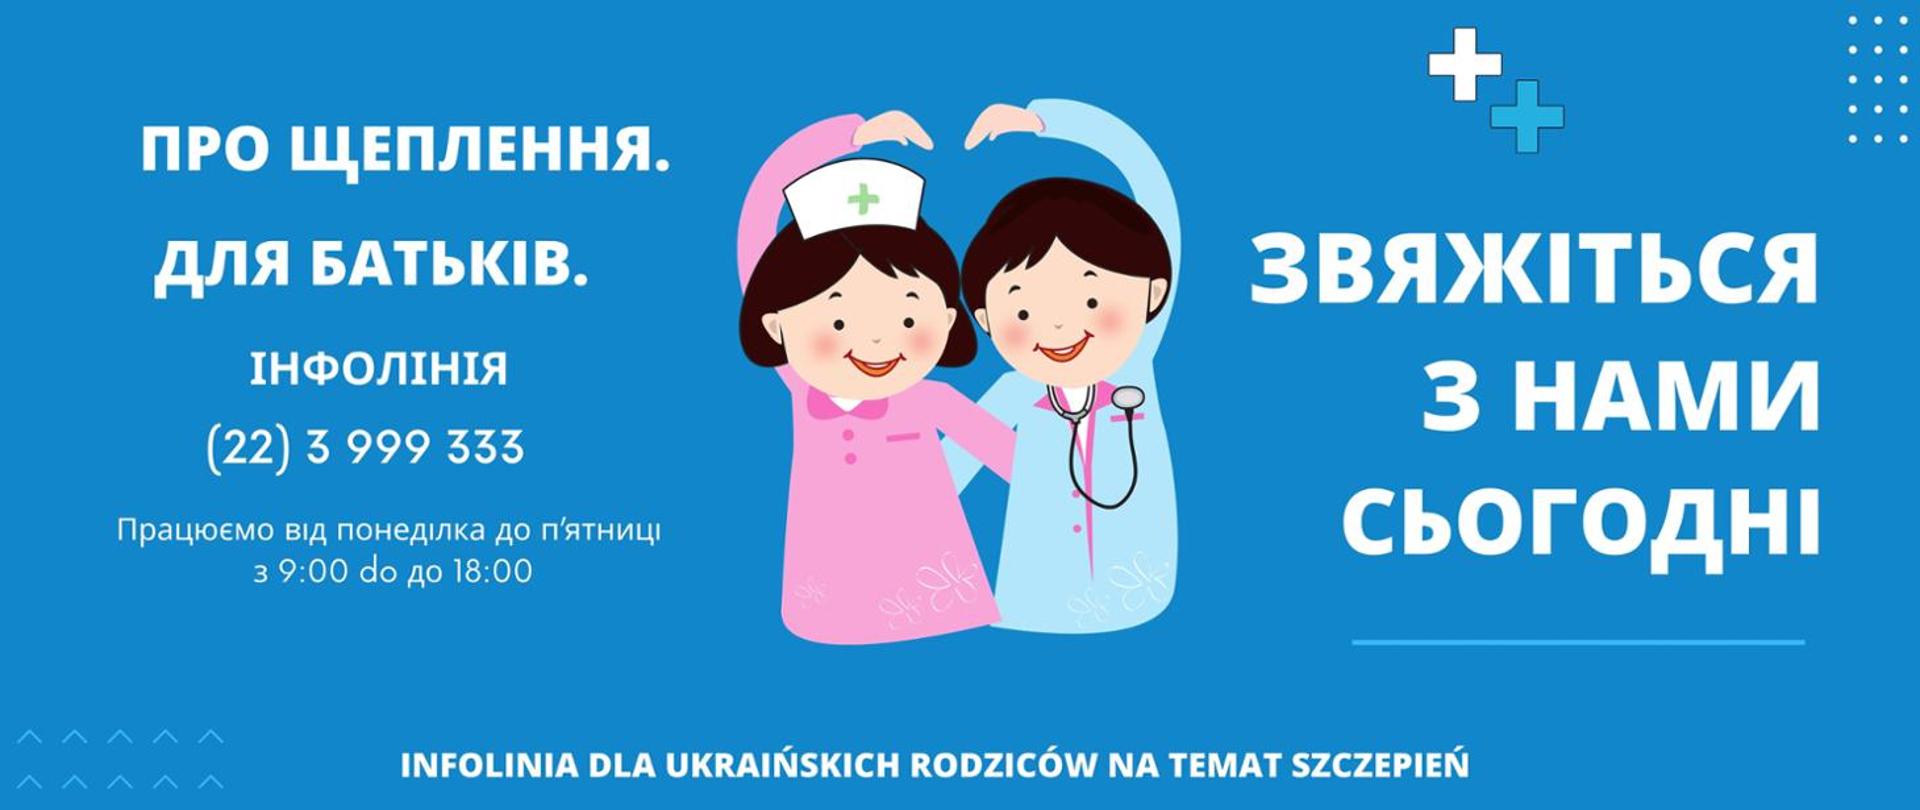 Infolinia dla ukraińskich rodziców na temat szczepień. ПРО ЩЕПЛЕННЯ. ДЛЯ БАТЬКІВ. ЗВЯЖІТЬСЯ З НАМИ СЬОГОДНІ. Працюємо від понеділка до п’ятниці з 9:00 do до 18:00 ІНФОЛІНІЯ: (22) 3 999 333 